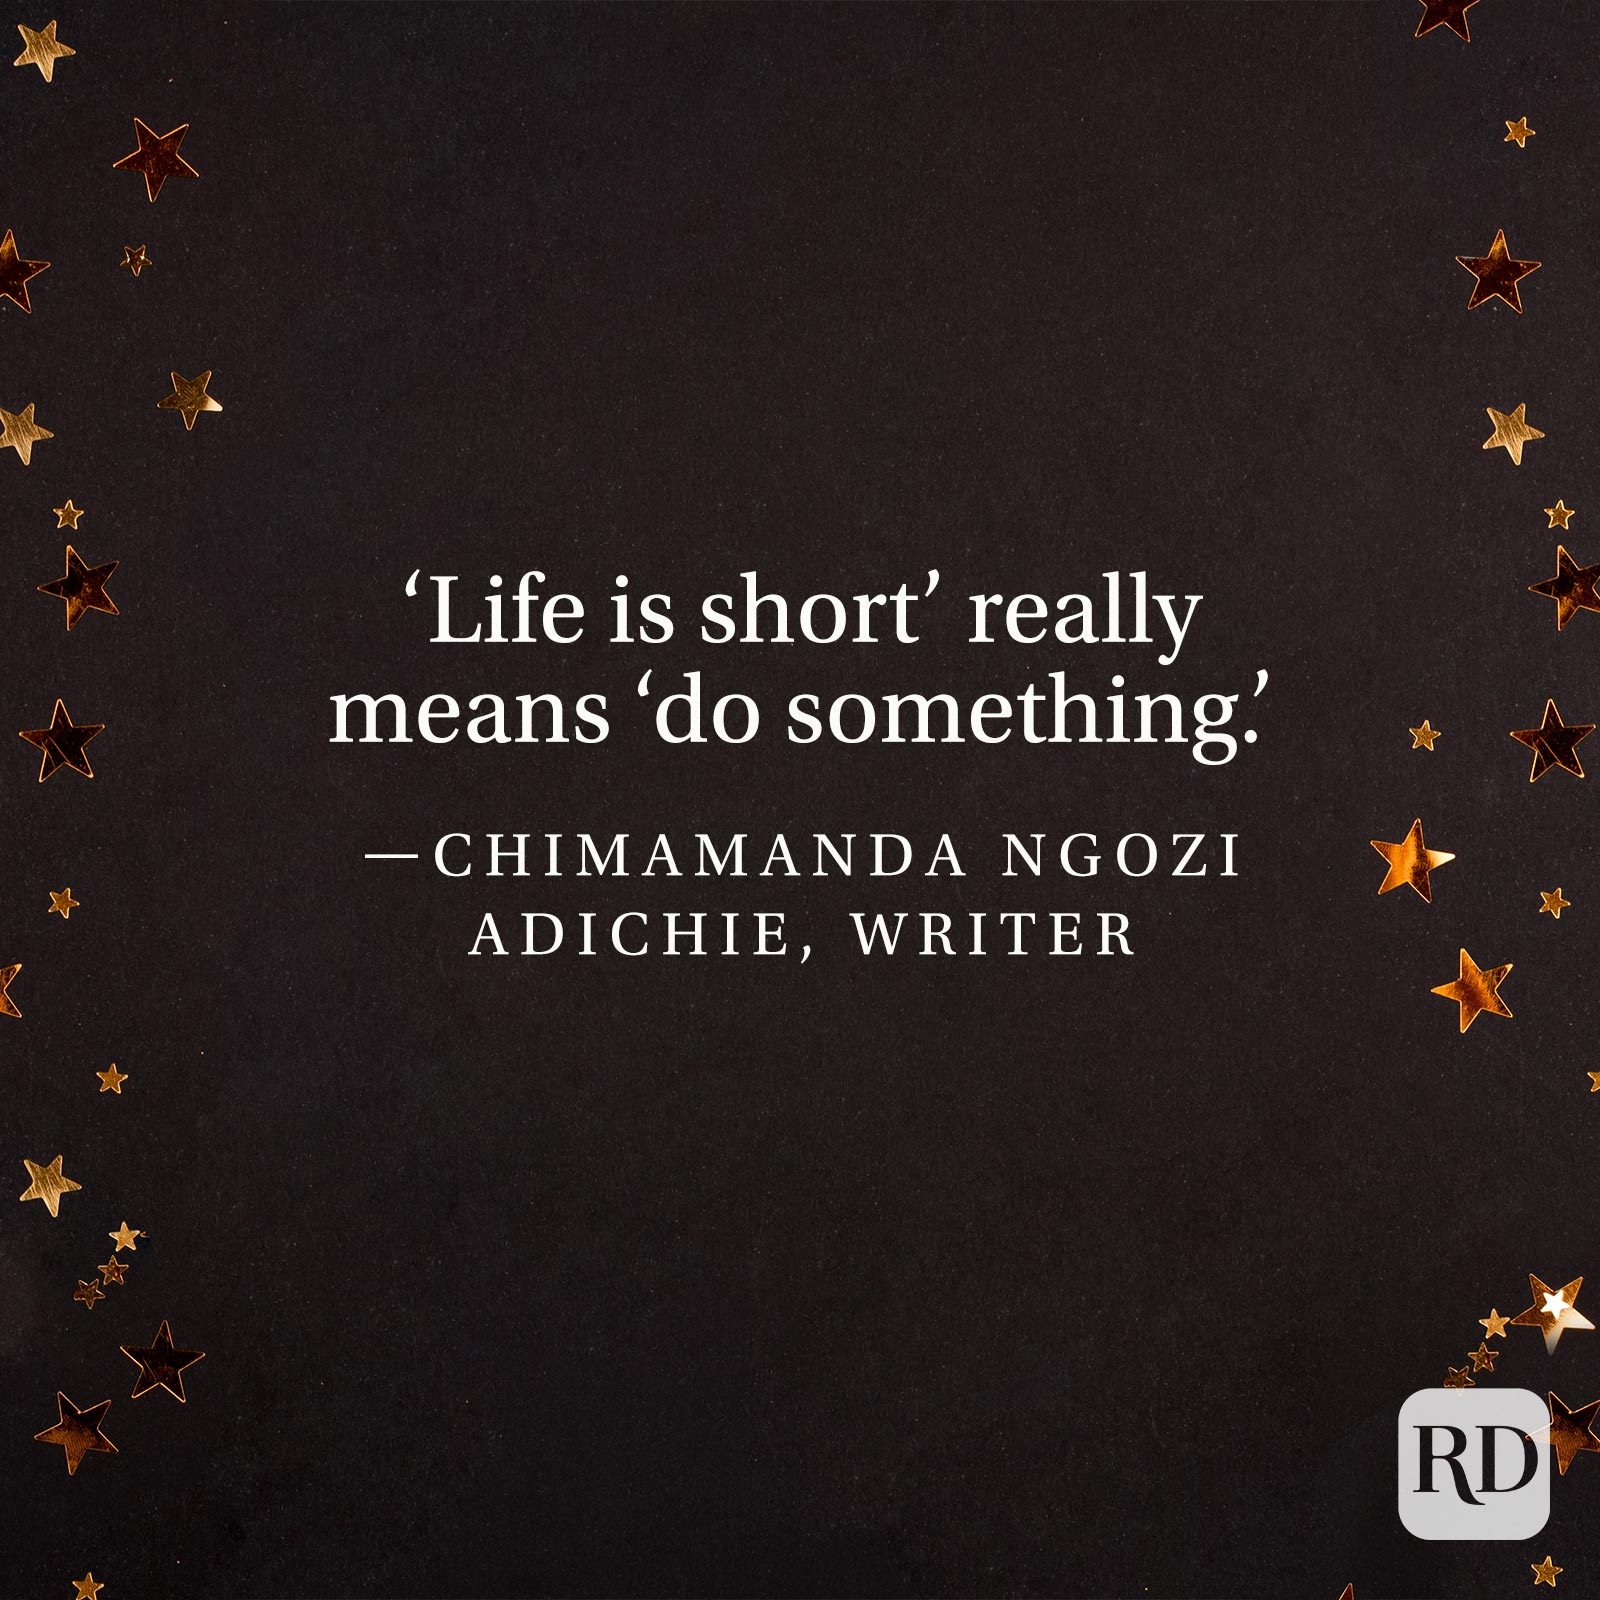 "'Life is short' really means 'do something.'" —Chimamanda Ngozi Adichie, writer